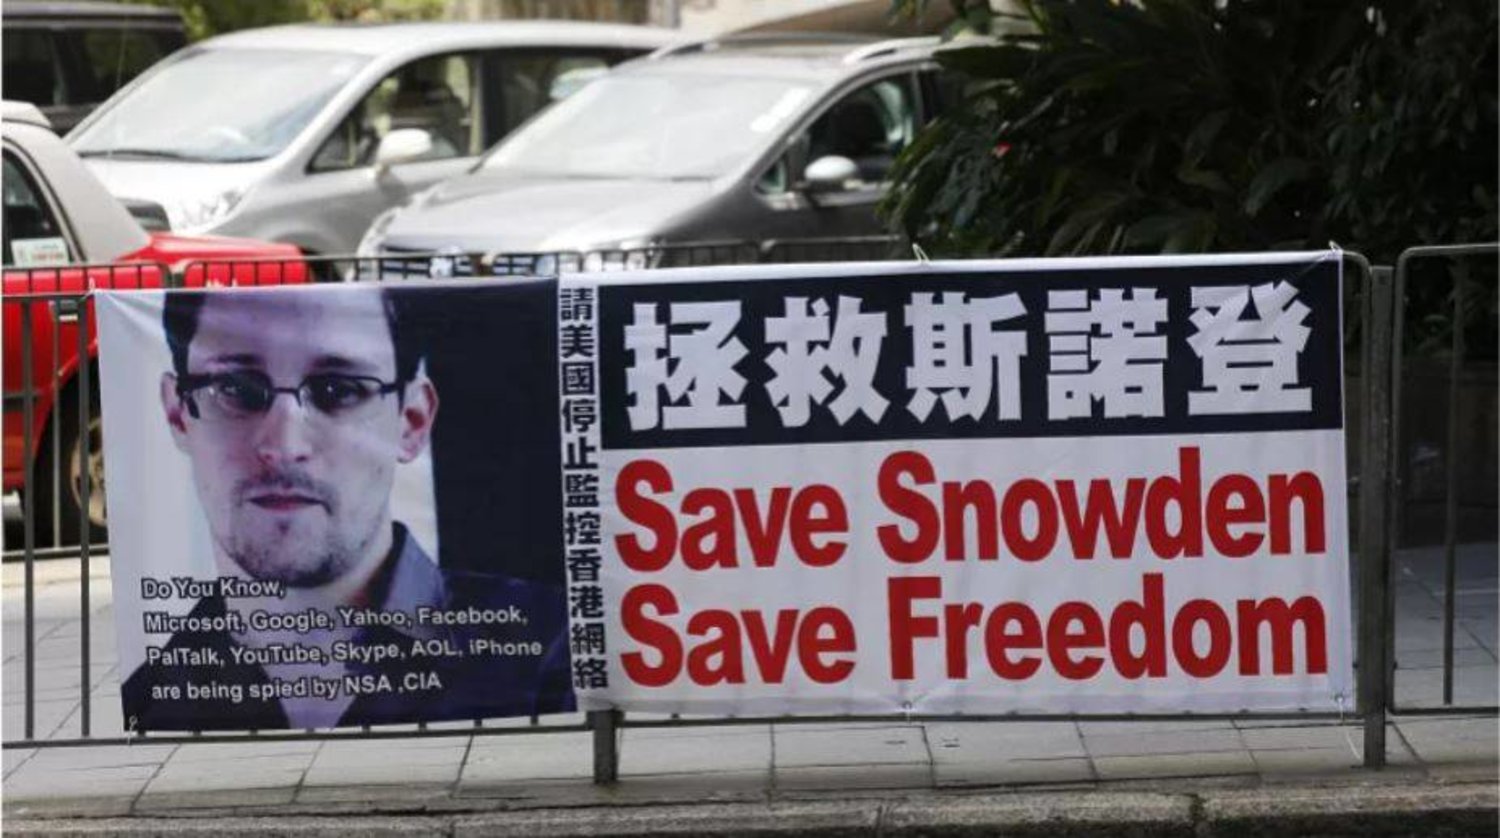 لافتة لدعم إدوارد سنودن في هونغ كونغ (أ.ب)